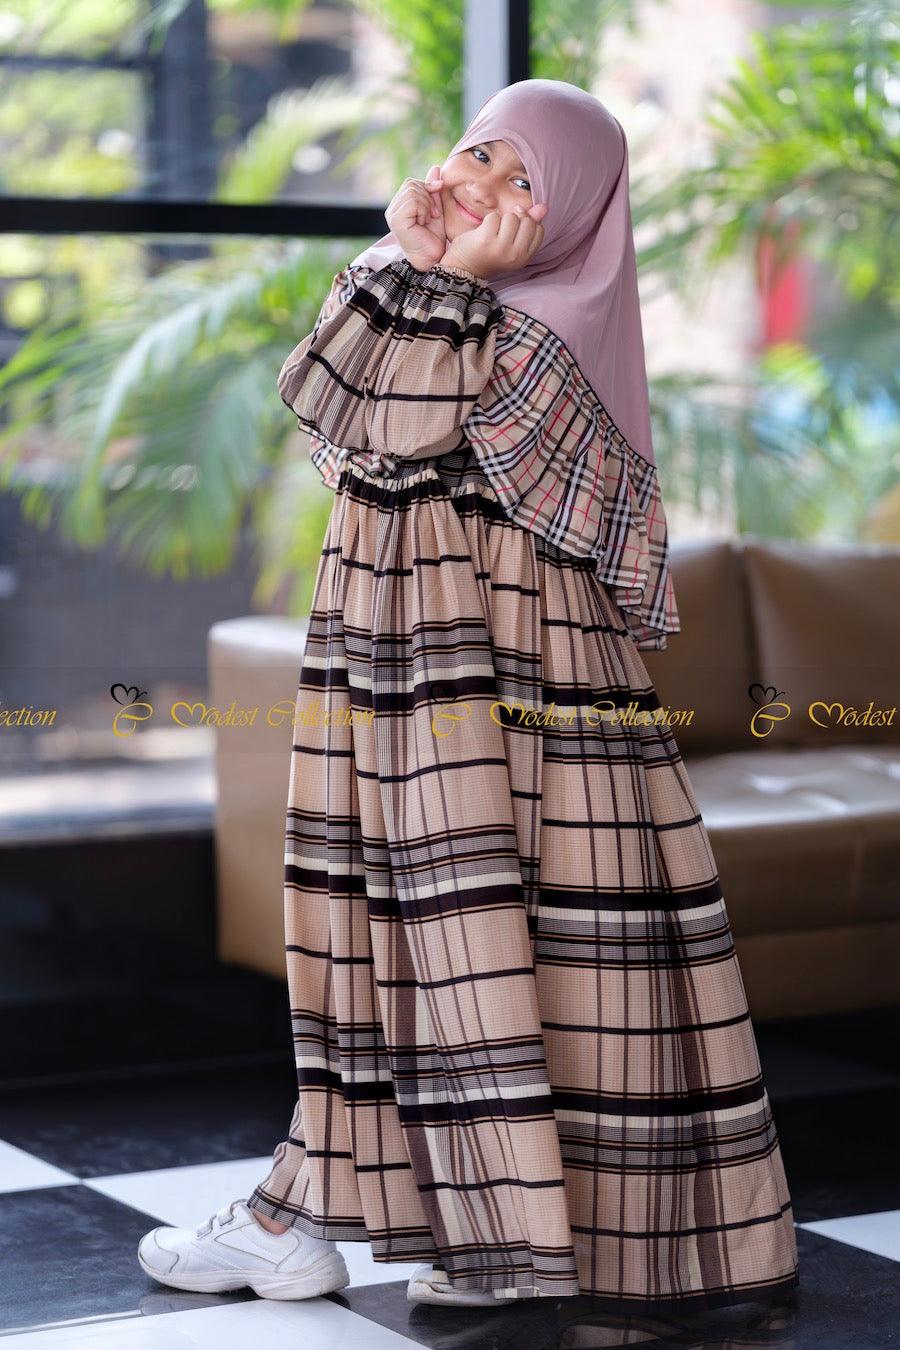 Little Mahzabin dress checkered - Modest Collection